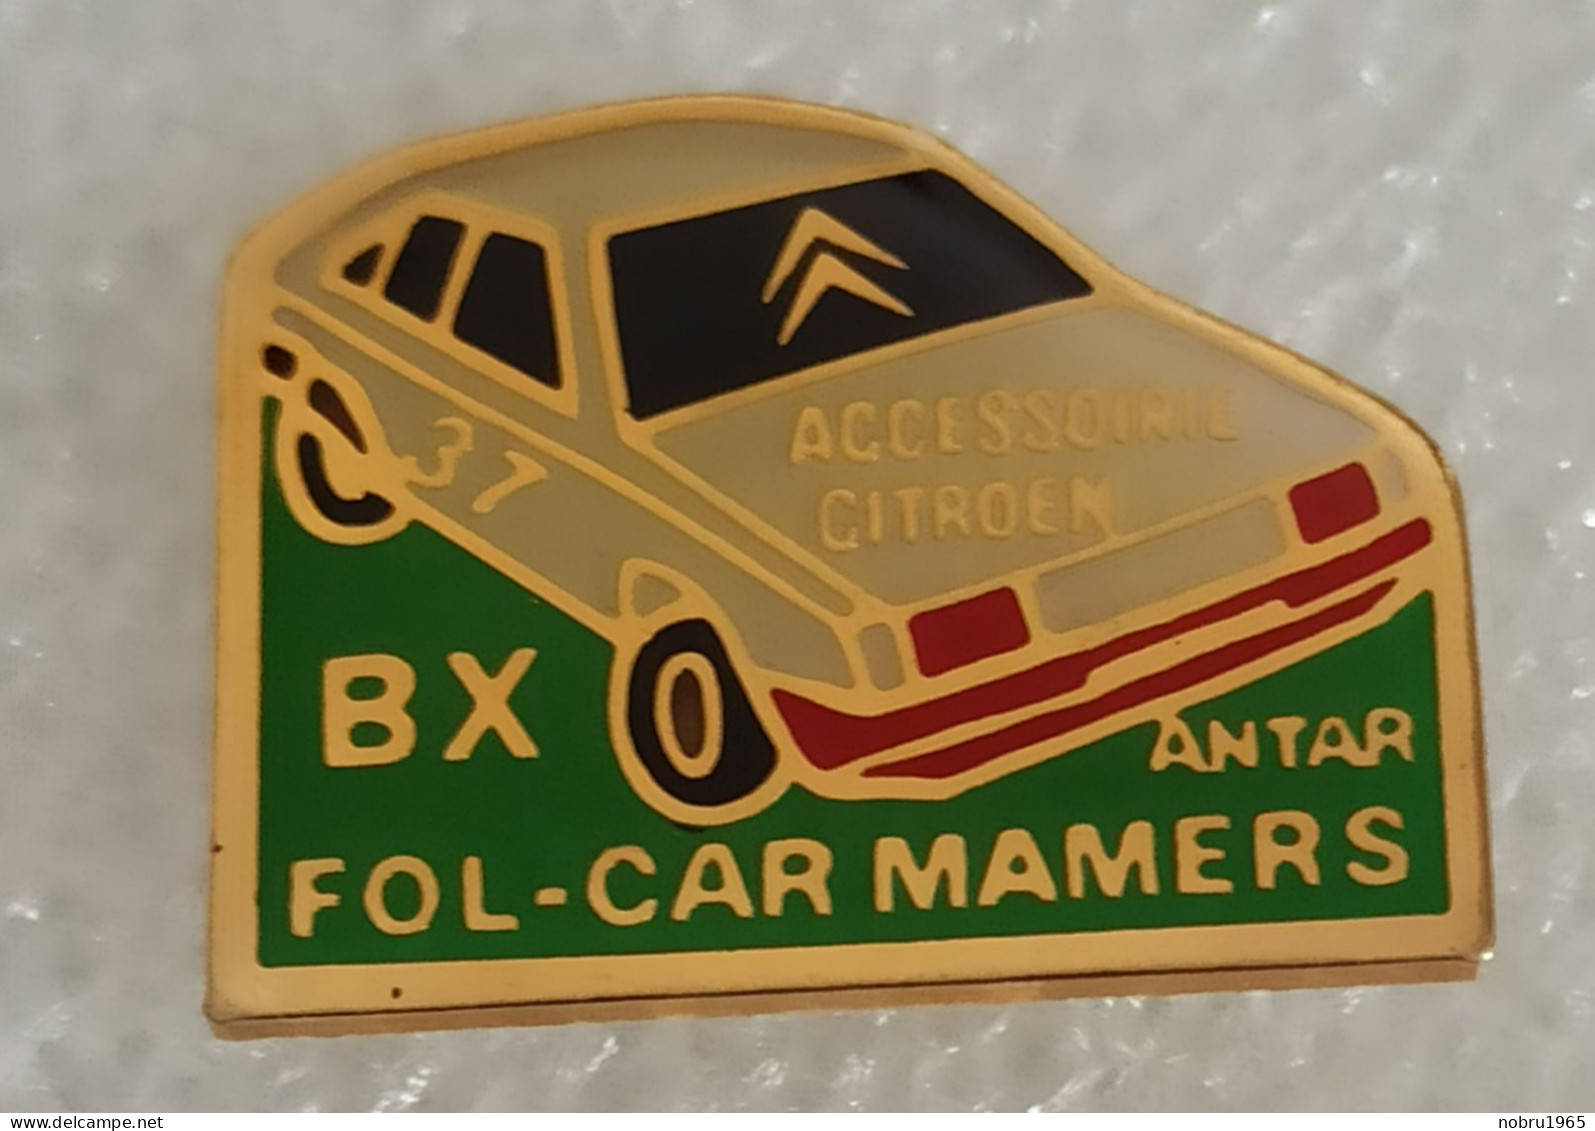 Pin's Citroën BX Fol Car Mamers - Citroën